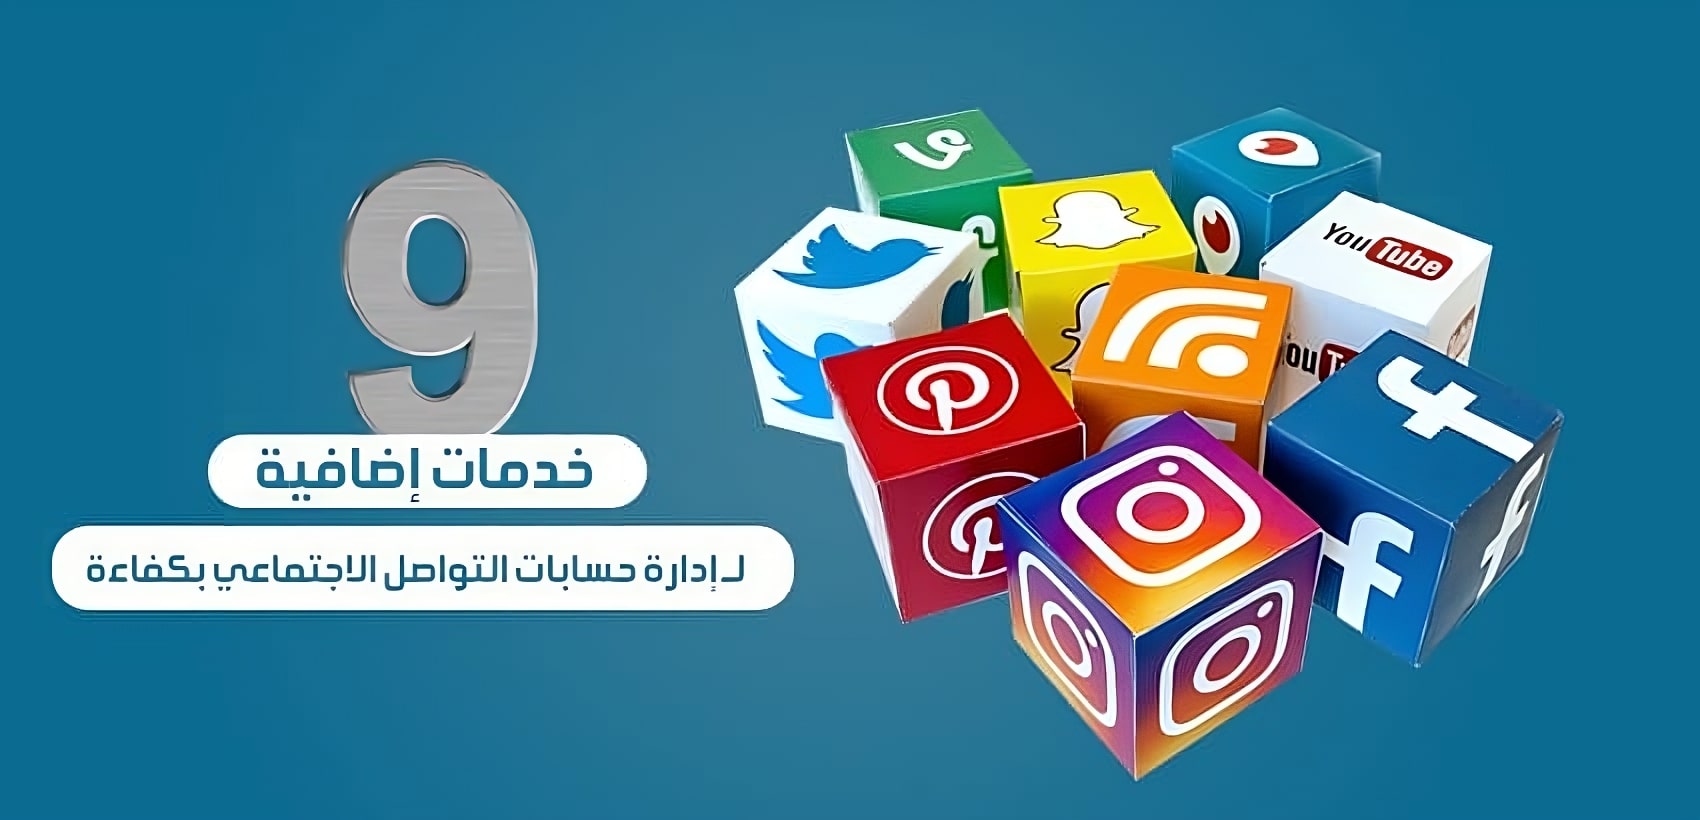 9 خدمات إضافية لــ إدارة حسابات التواصل الاجتماعي بكفاءة